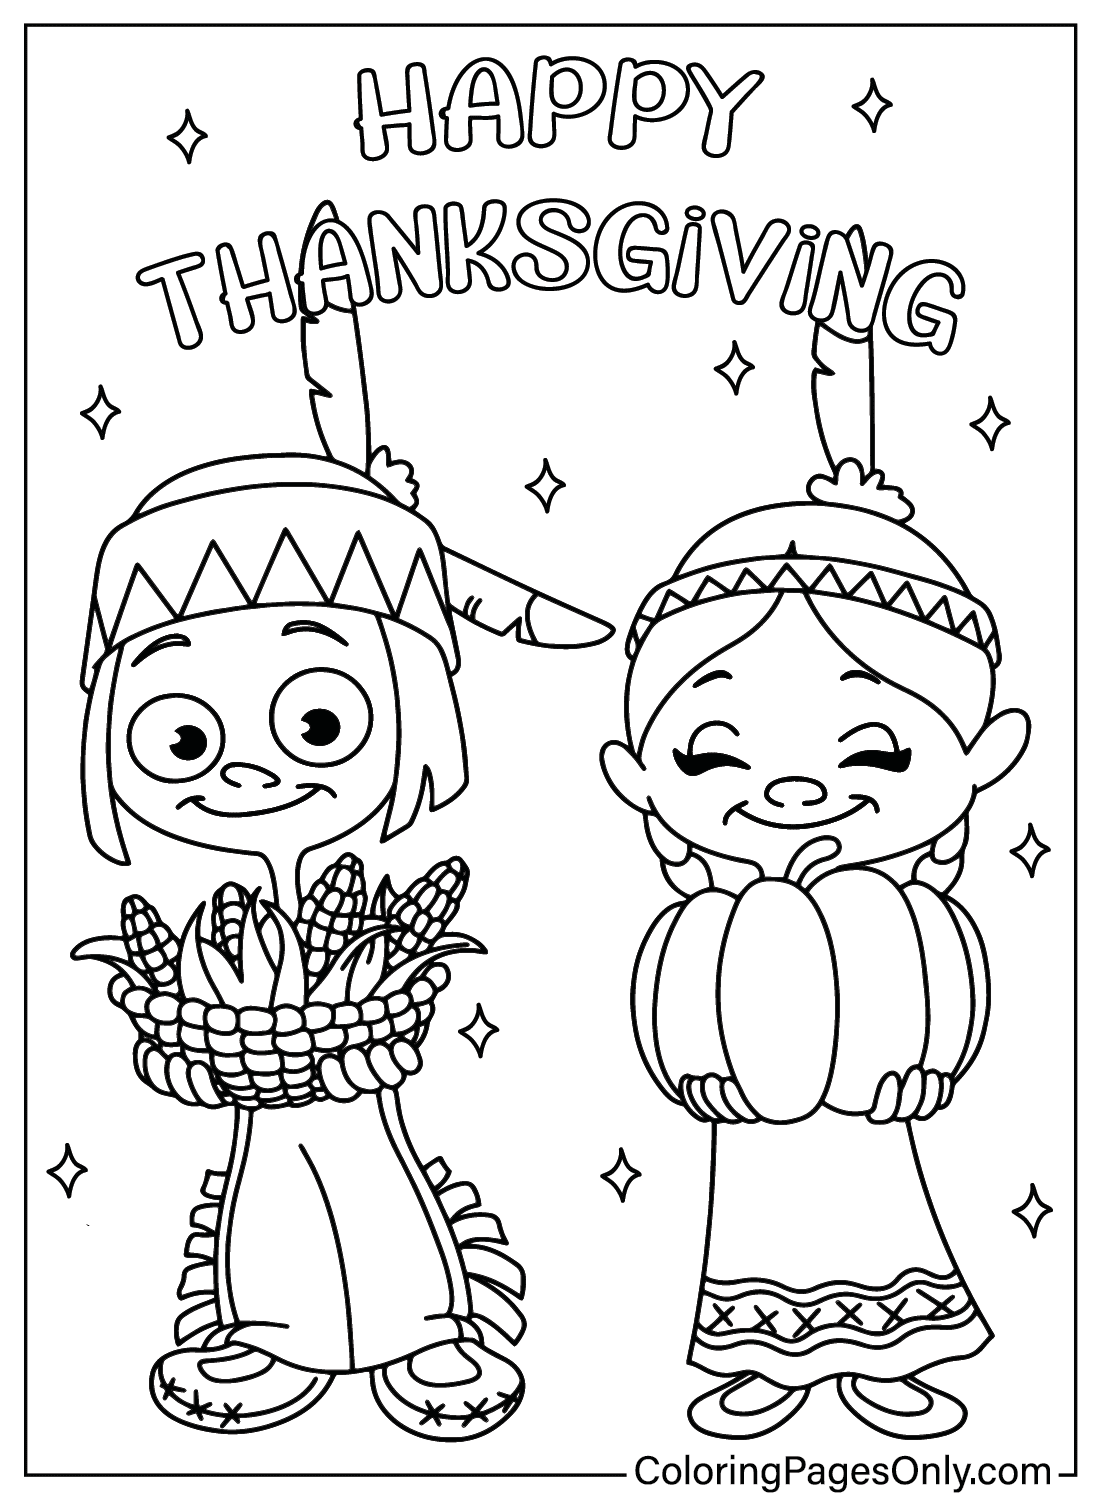 Página para colorear Dibujos animados de Acción de Gracias de Dibujos animados de Acción de Gracias